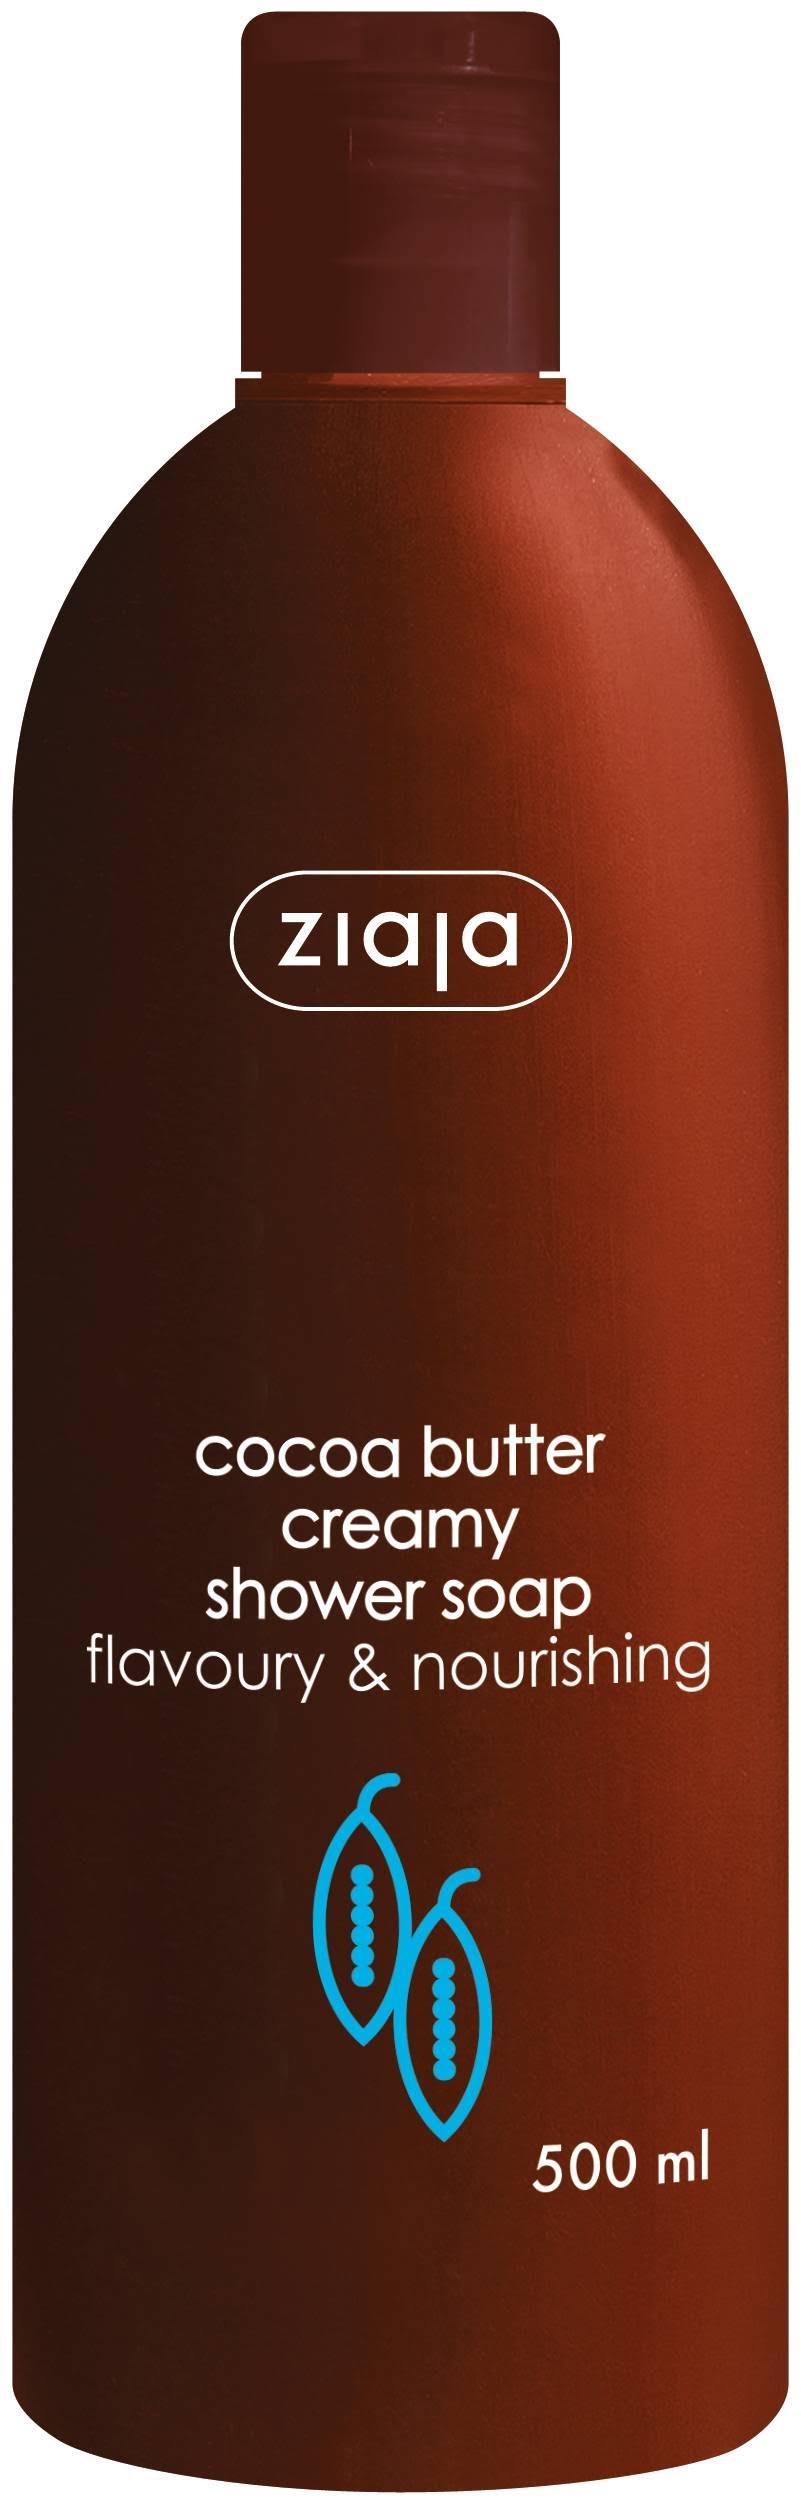 Ziaja Cocoa Butter Creamy Shower Soap - 500ml